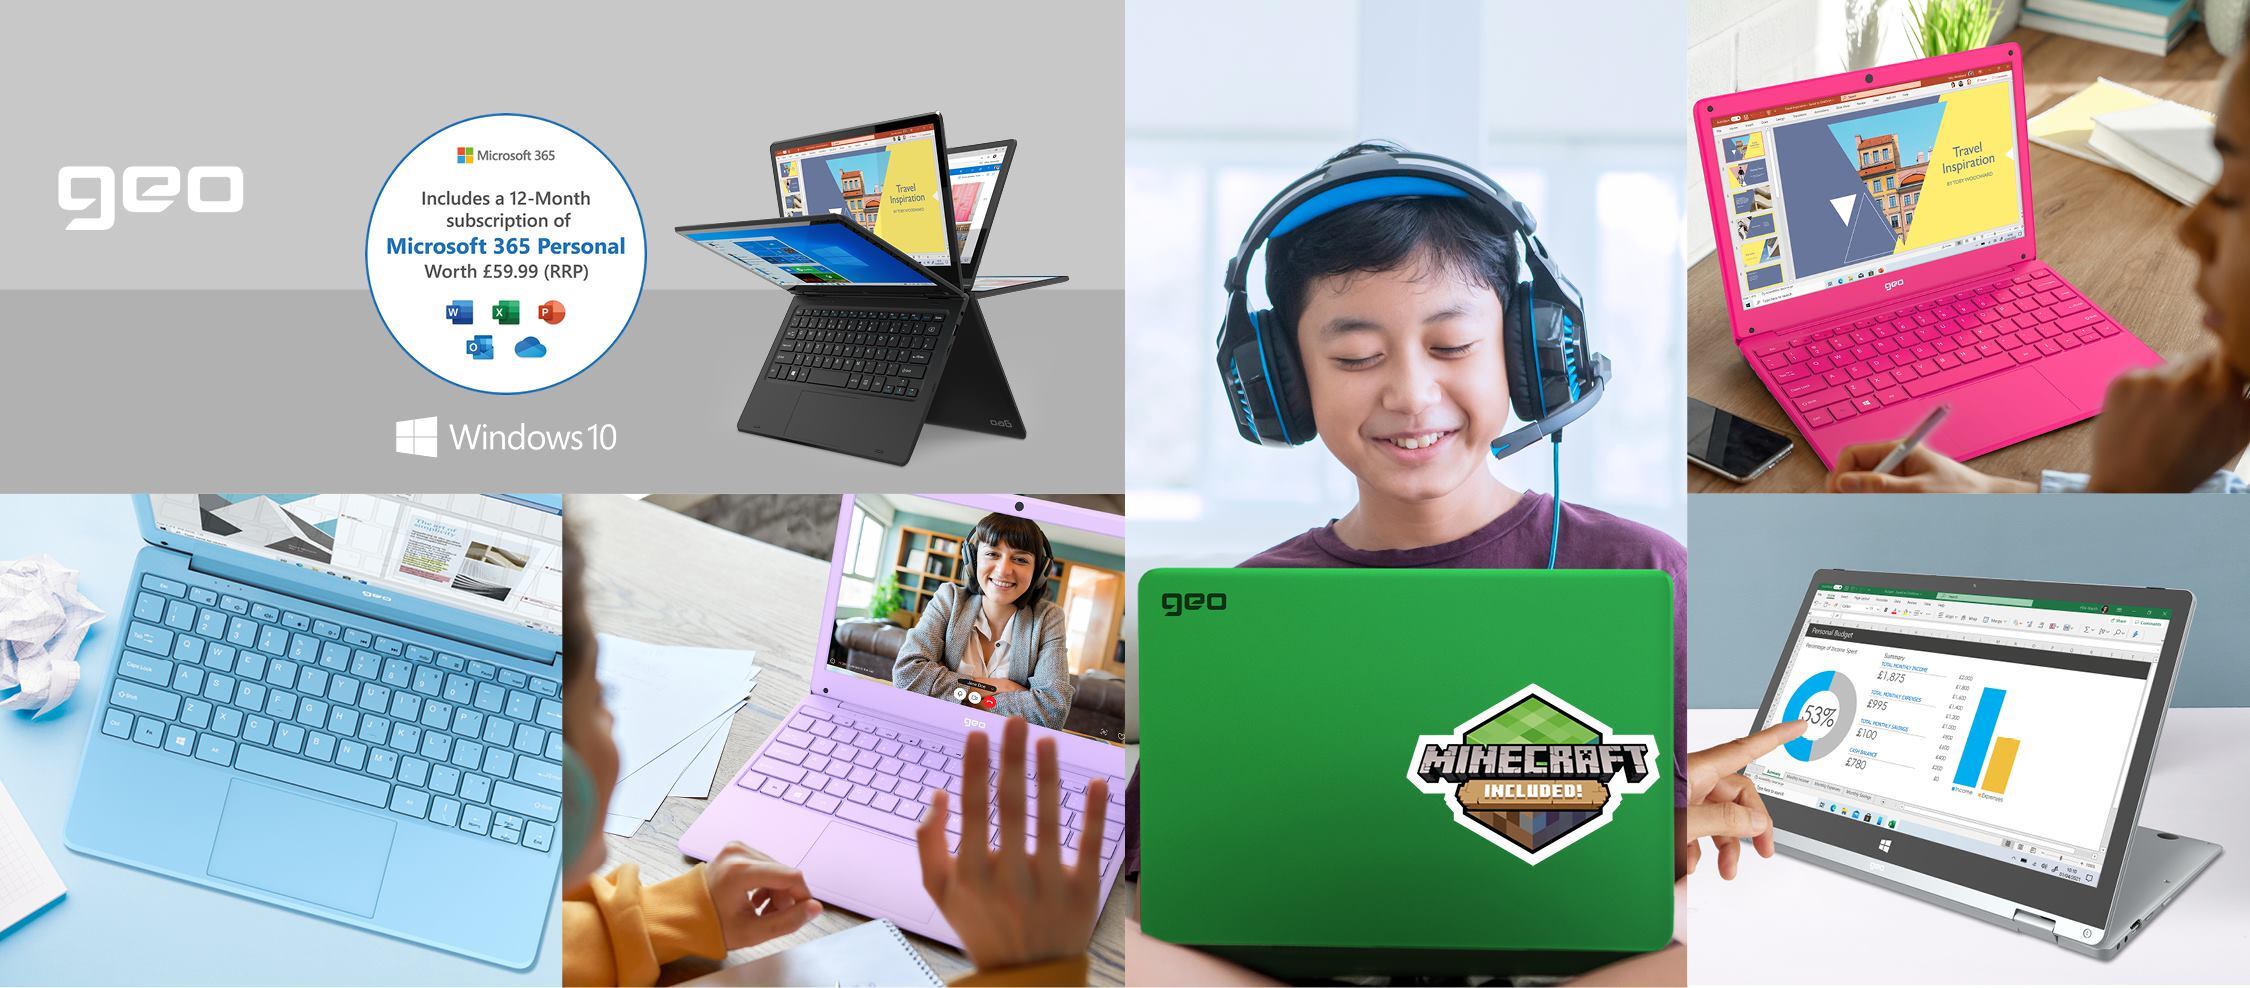 Smiling children use laptops